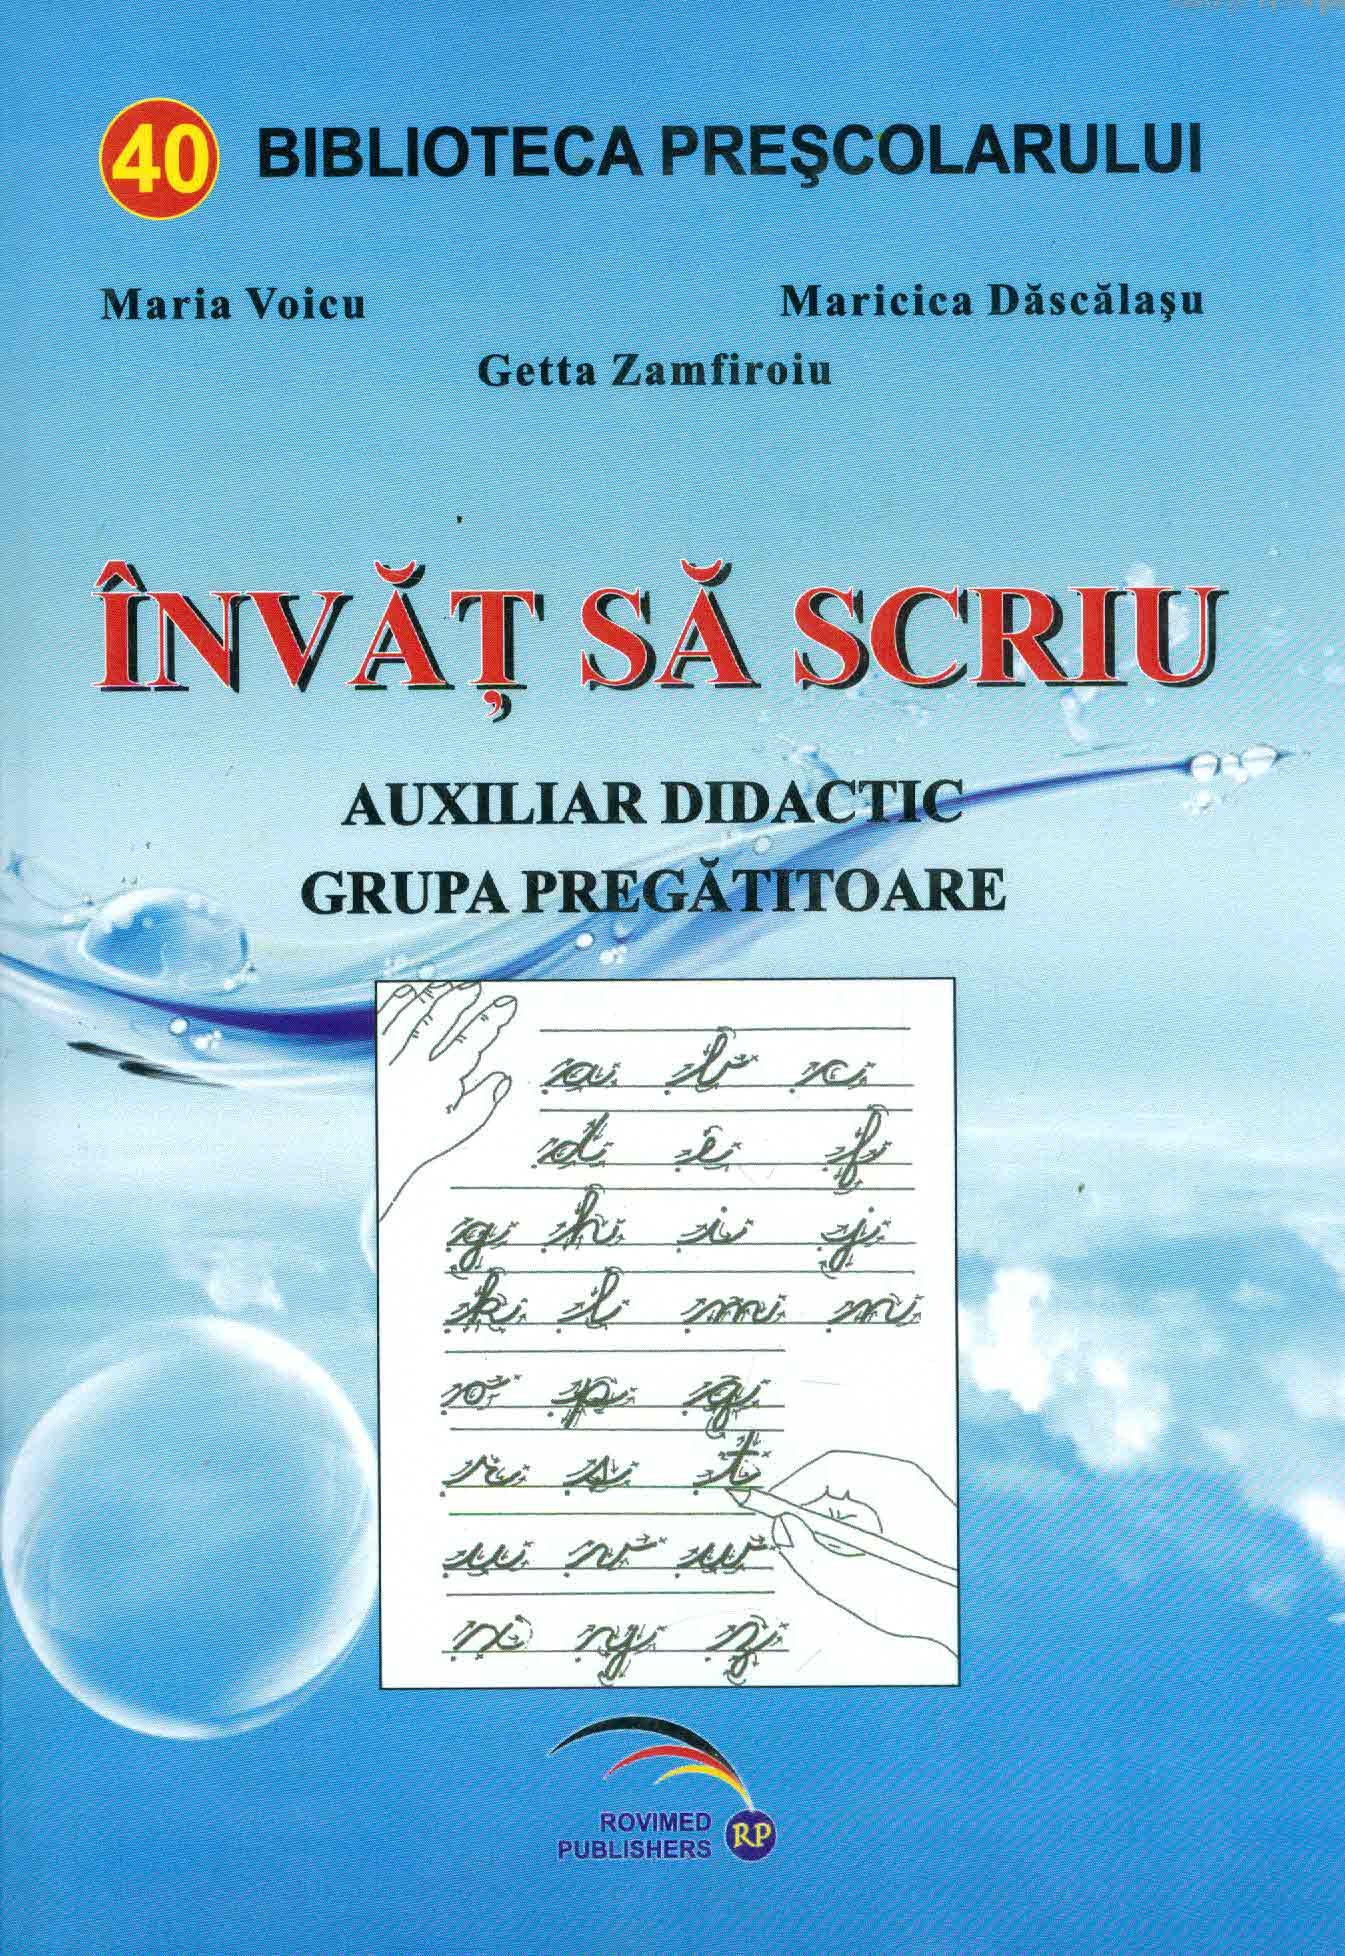 Invat sa scriu - Maria Voicu, Maricica Dascalasu, Getta Zamfiroiu